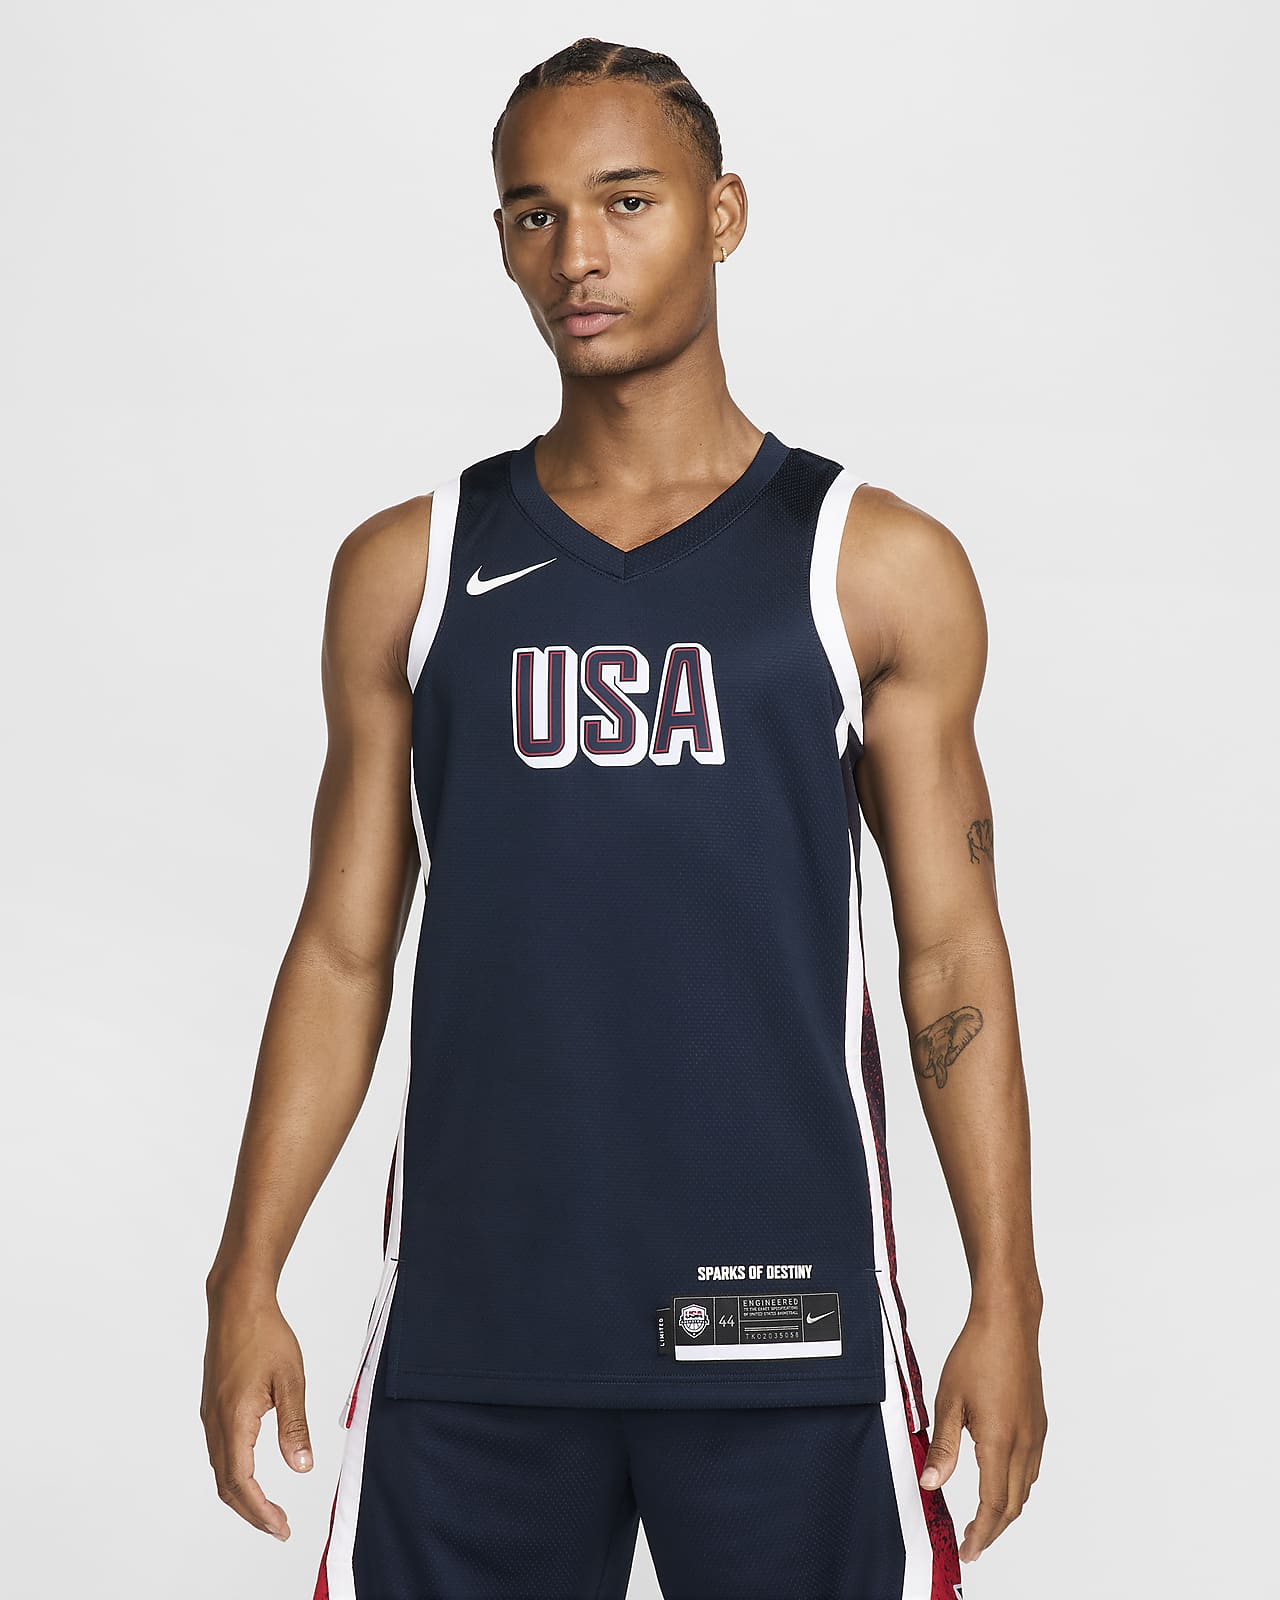 USAB Limited Road Nike Basketballtrikot (Herren)